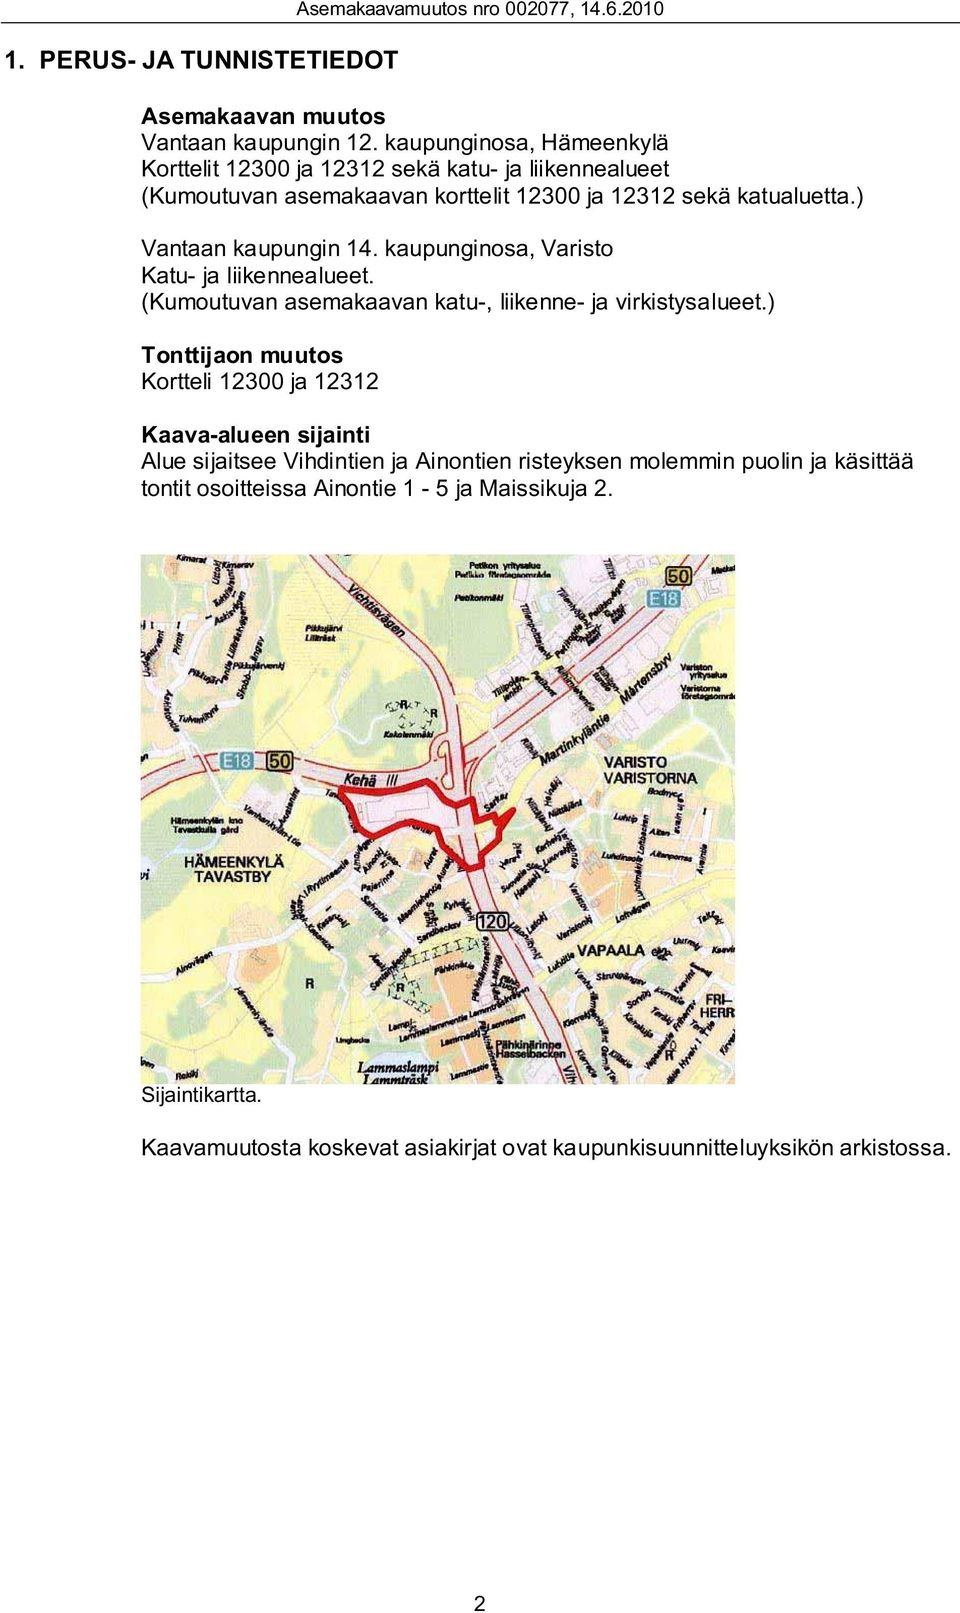 kaupunginosa, Varisto Katu- ja liikennealueet. (Kumoutuvan asemakaavan katu-, liikenne- ja virkistysalueet.